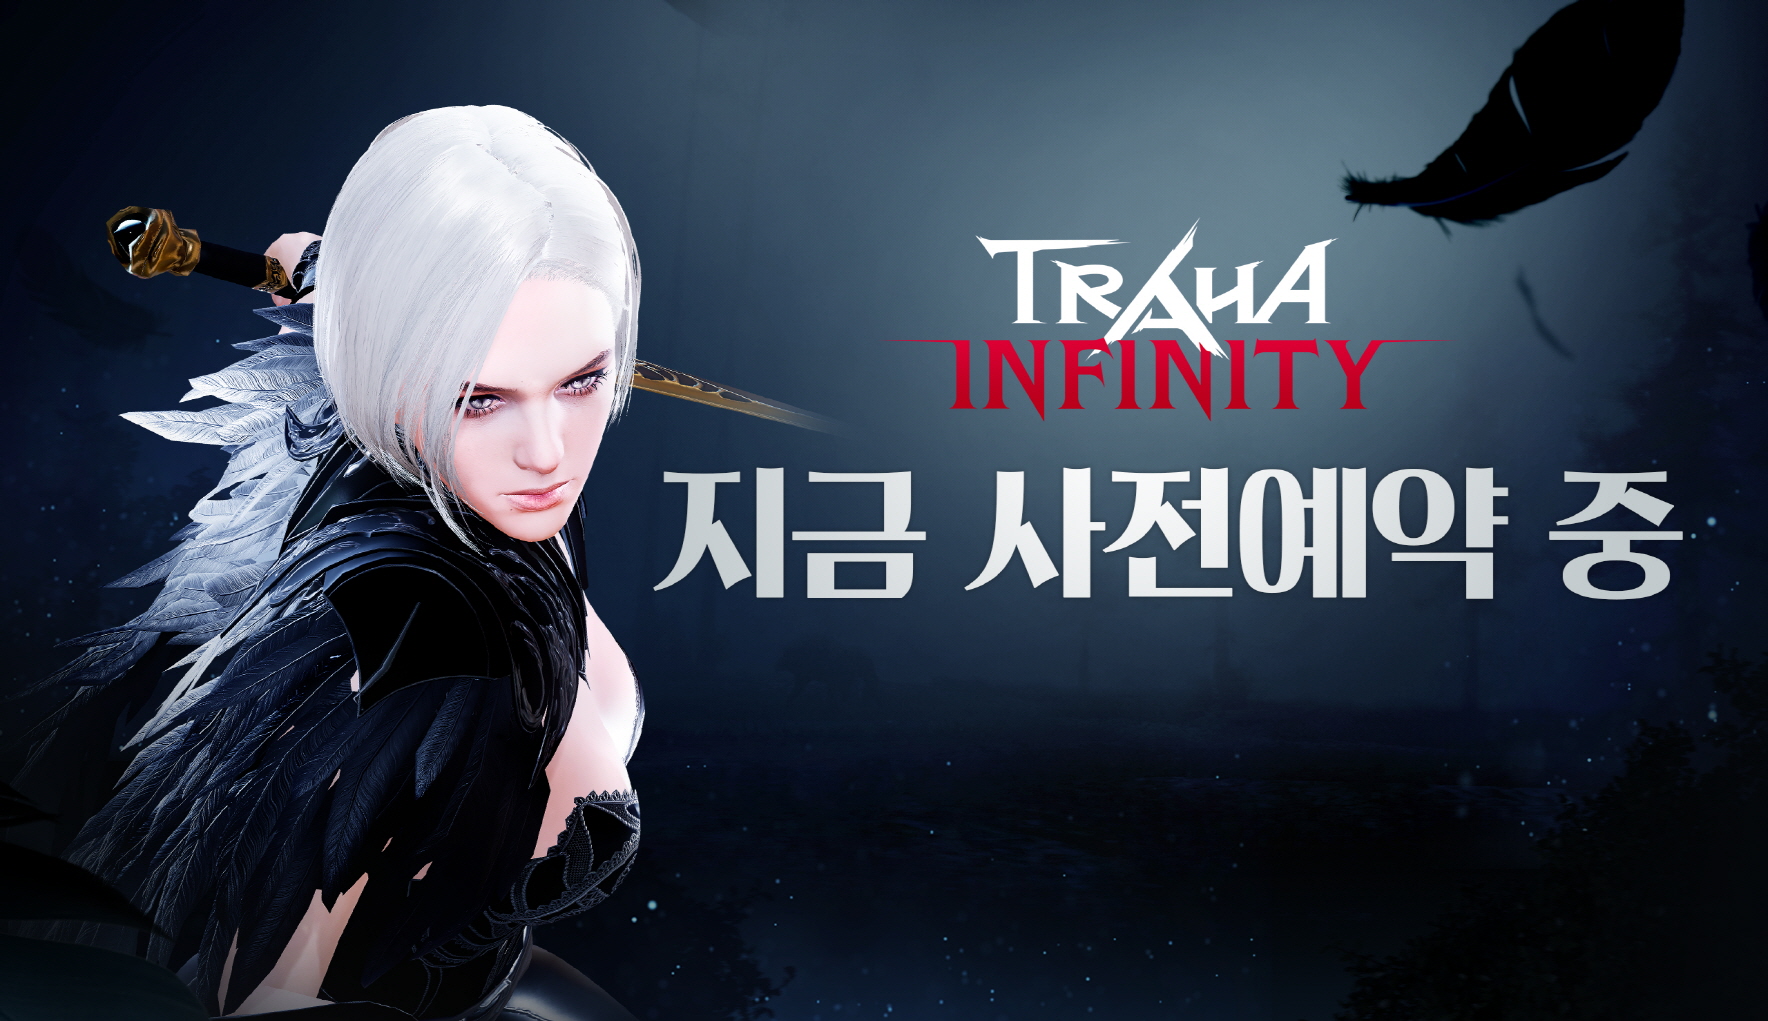 Traha Infinity chính thức mở cửa ngày 09/02.